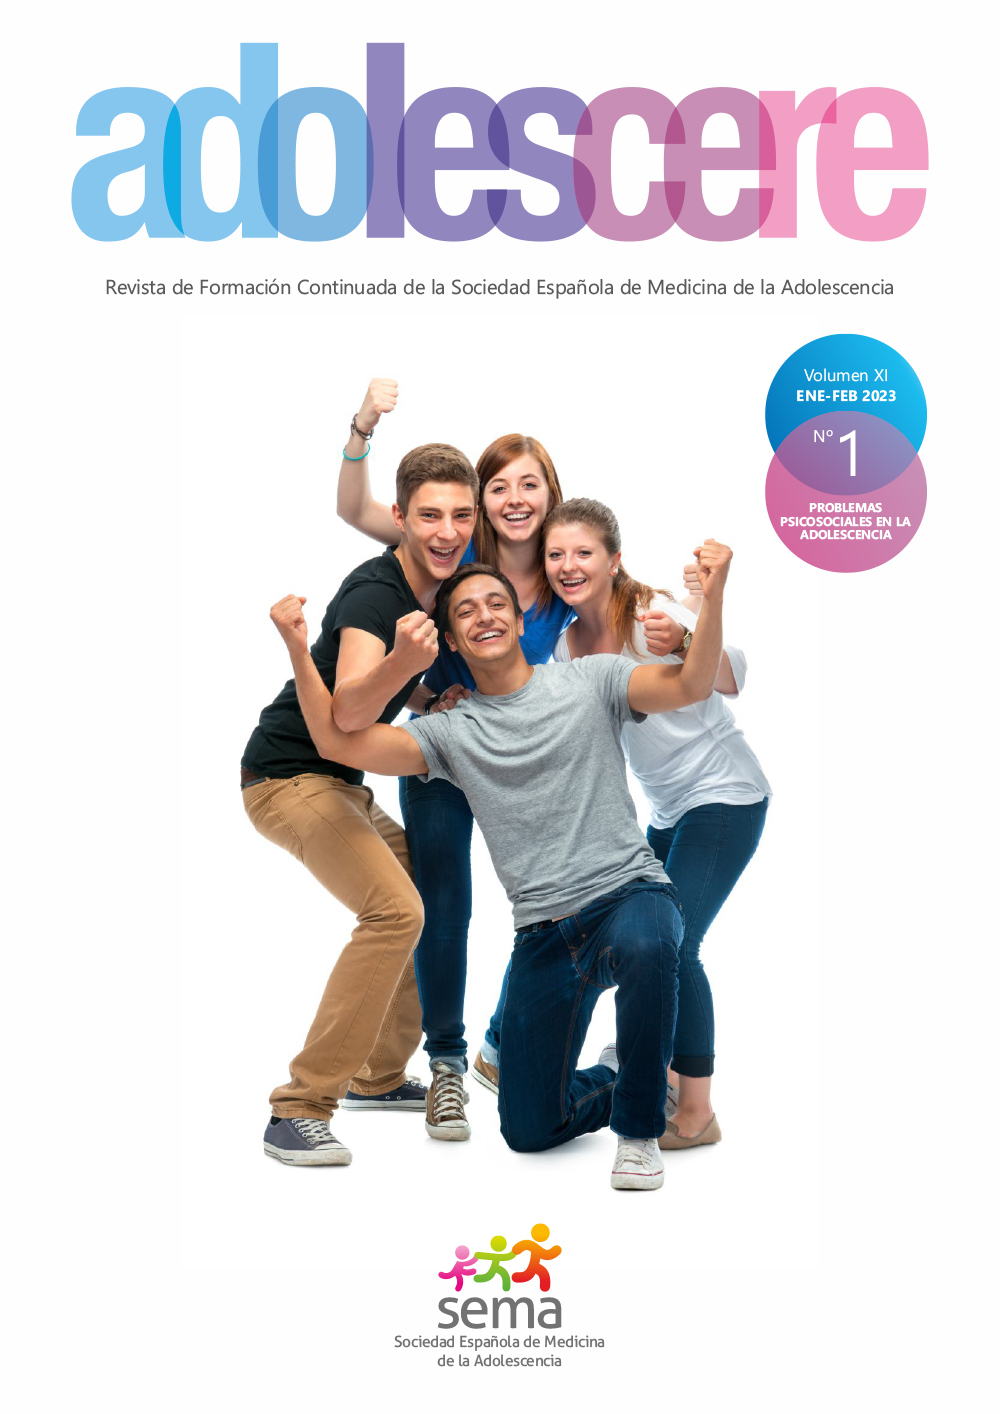 La revista Adolescere publica el número 1 de 2023 dedicado a Problemas psicosociales en la adolescencia